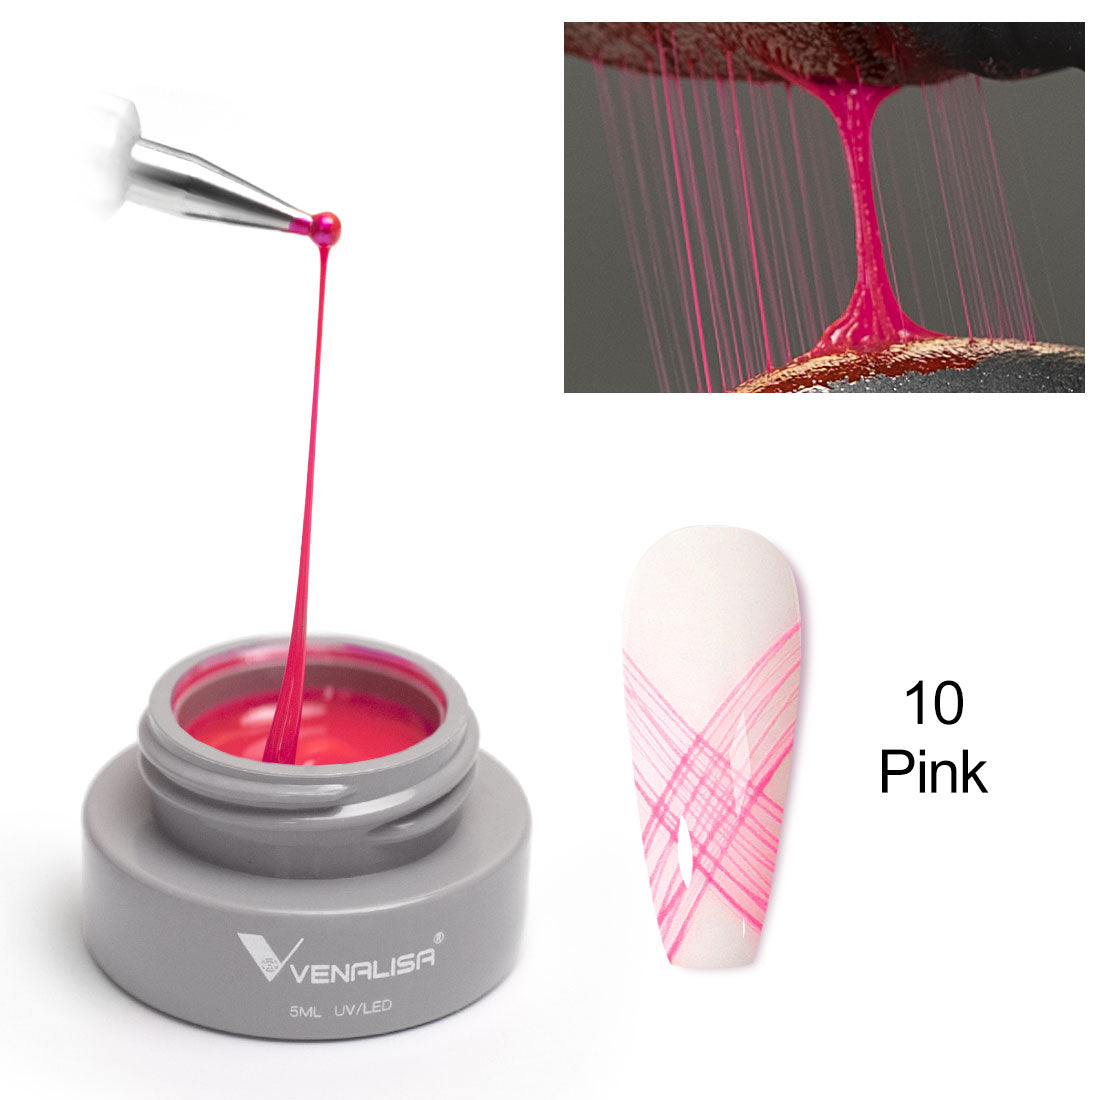 Venalisa spider gel pink color